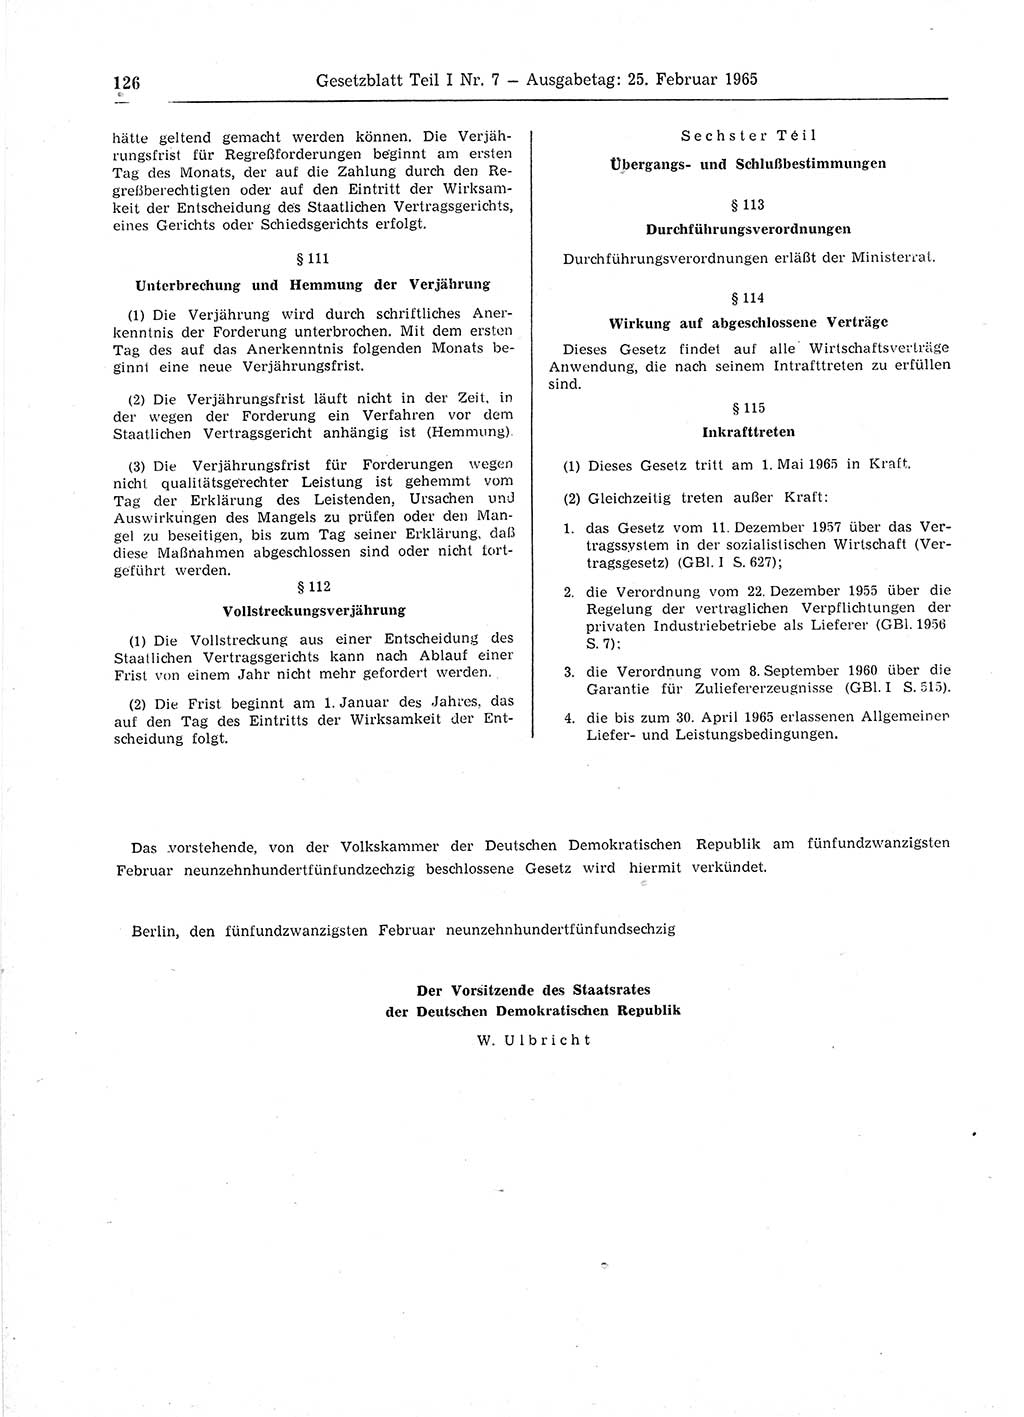 Gesetzblatt (GBl.) der Deutschen Demokratischen Republik (DDR) Teil Ⅰ 1965, Seite 126 (GBl. DDR Ⅰ 1965, S. 126)